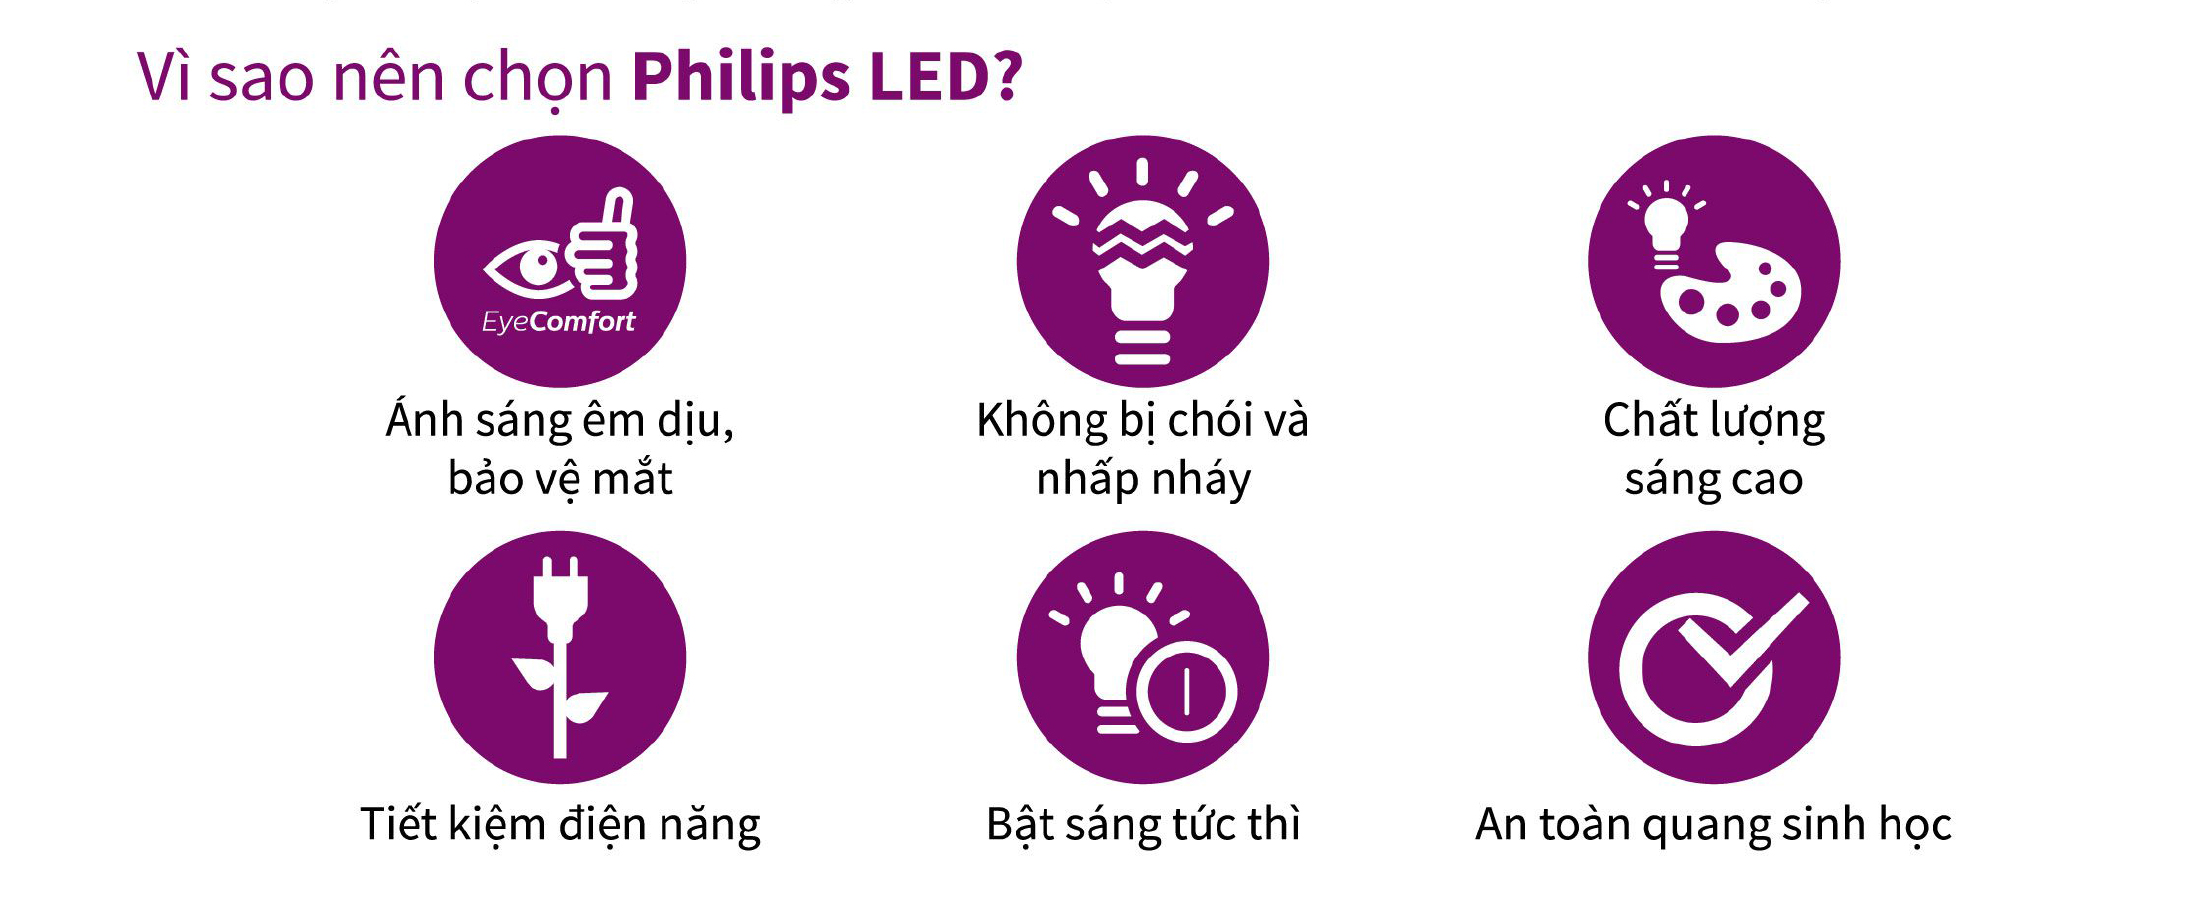 Vì sao chon đèn Philips